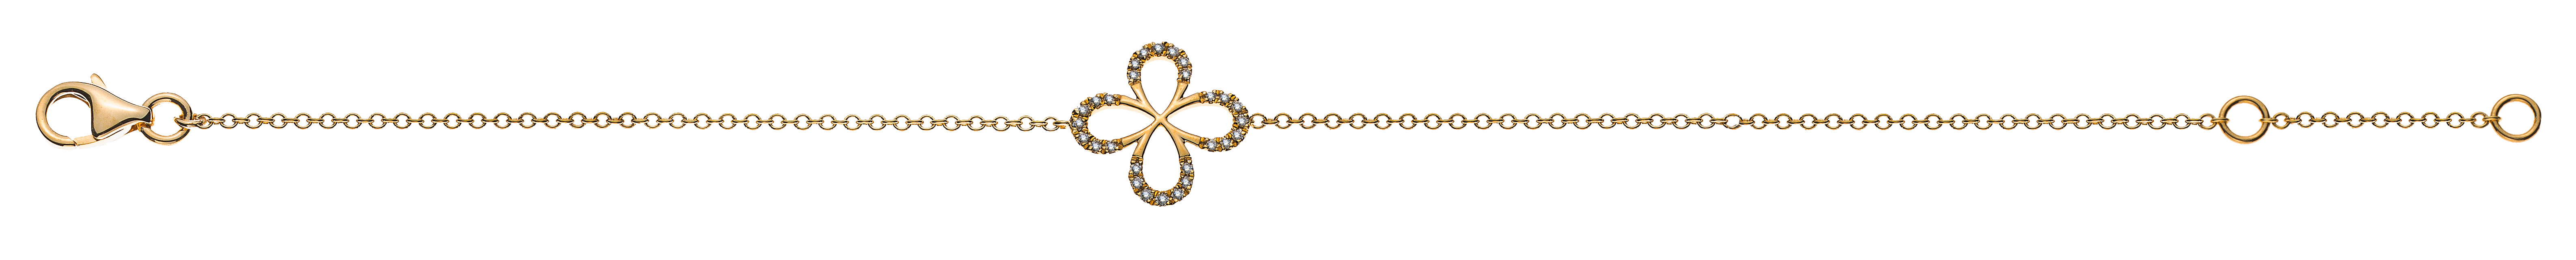 AURONOS Prestige Armband Rundanker 18K Gelbgold Diamanten 0.09ct 19cm